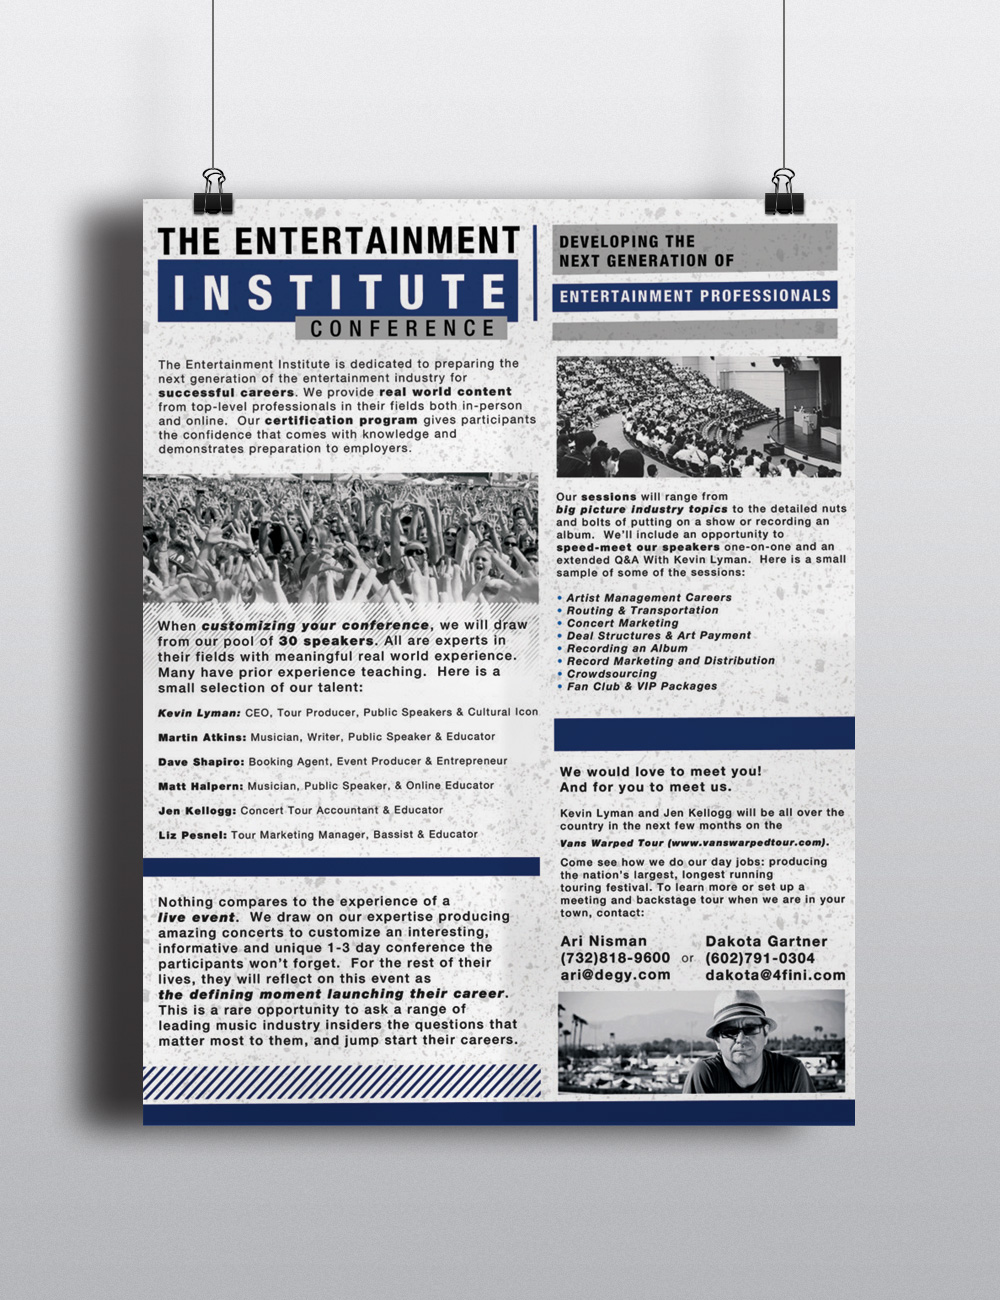 the Entertainment institute